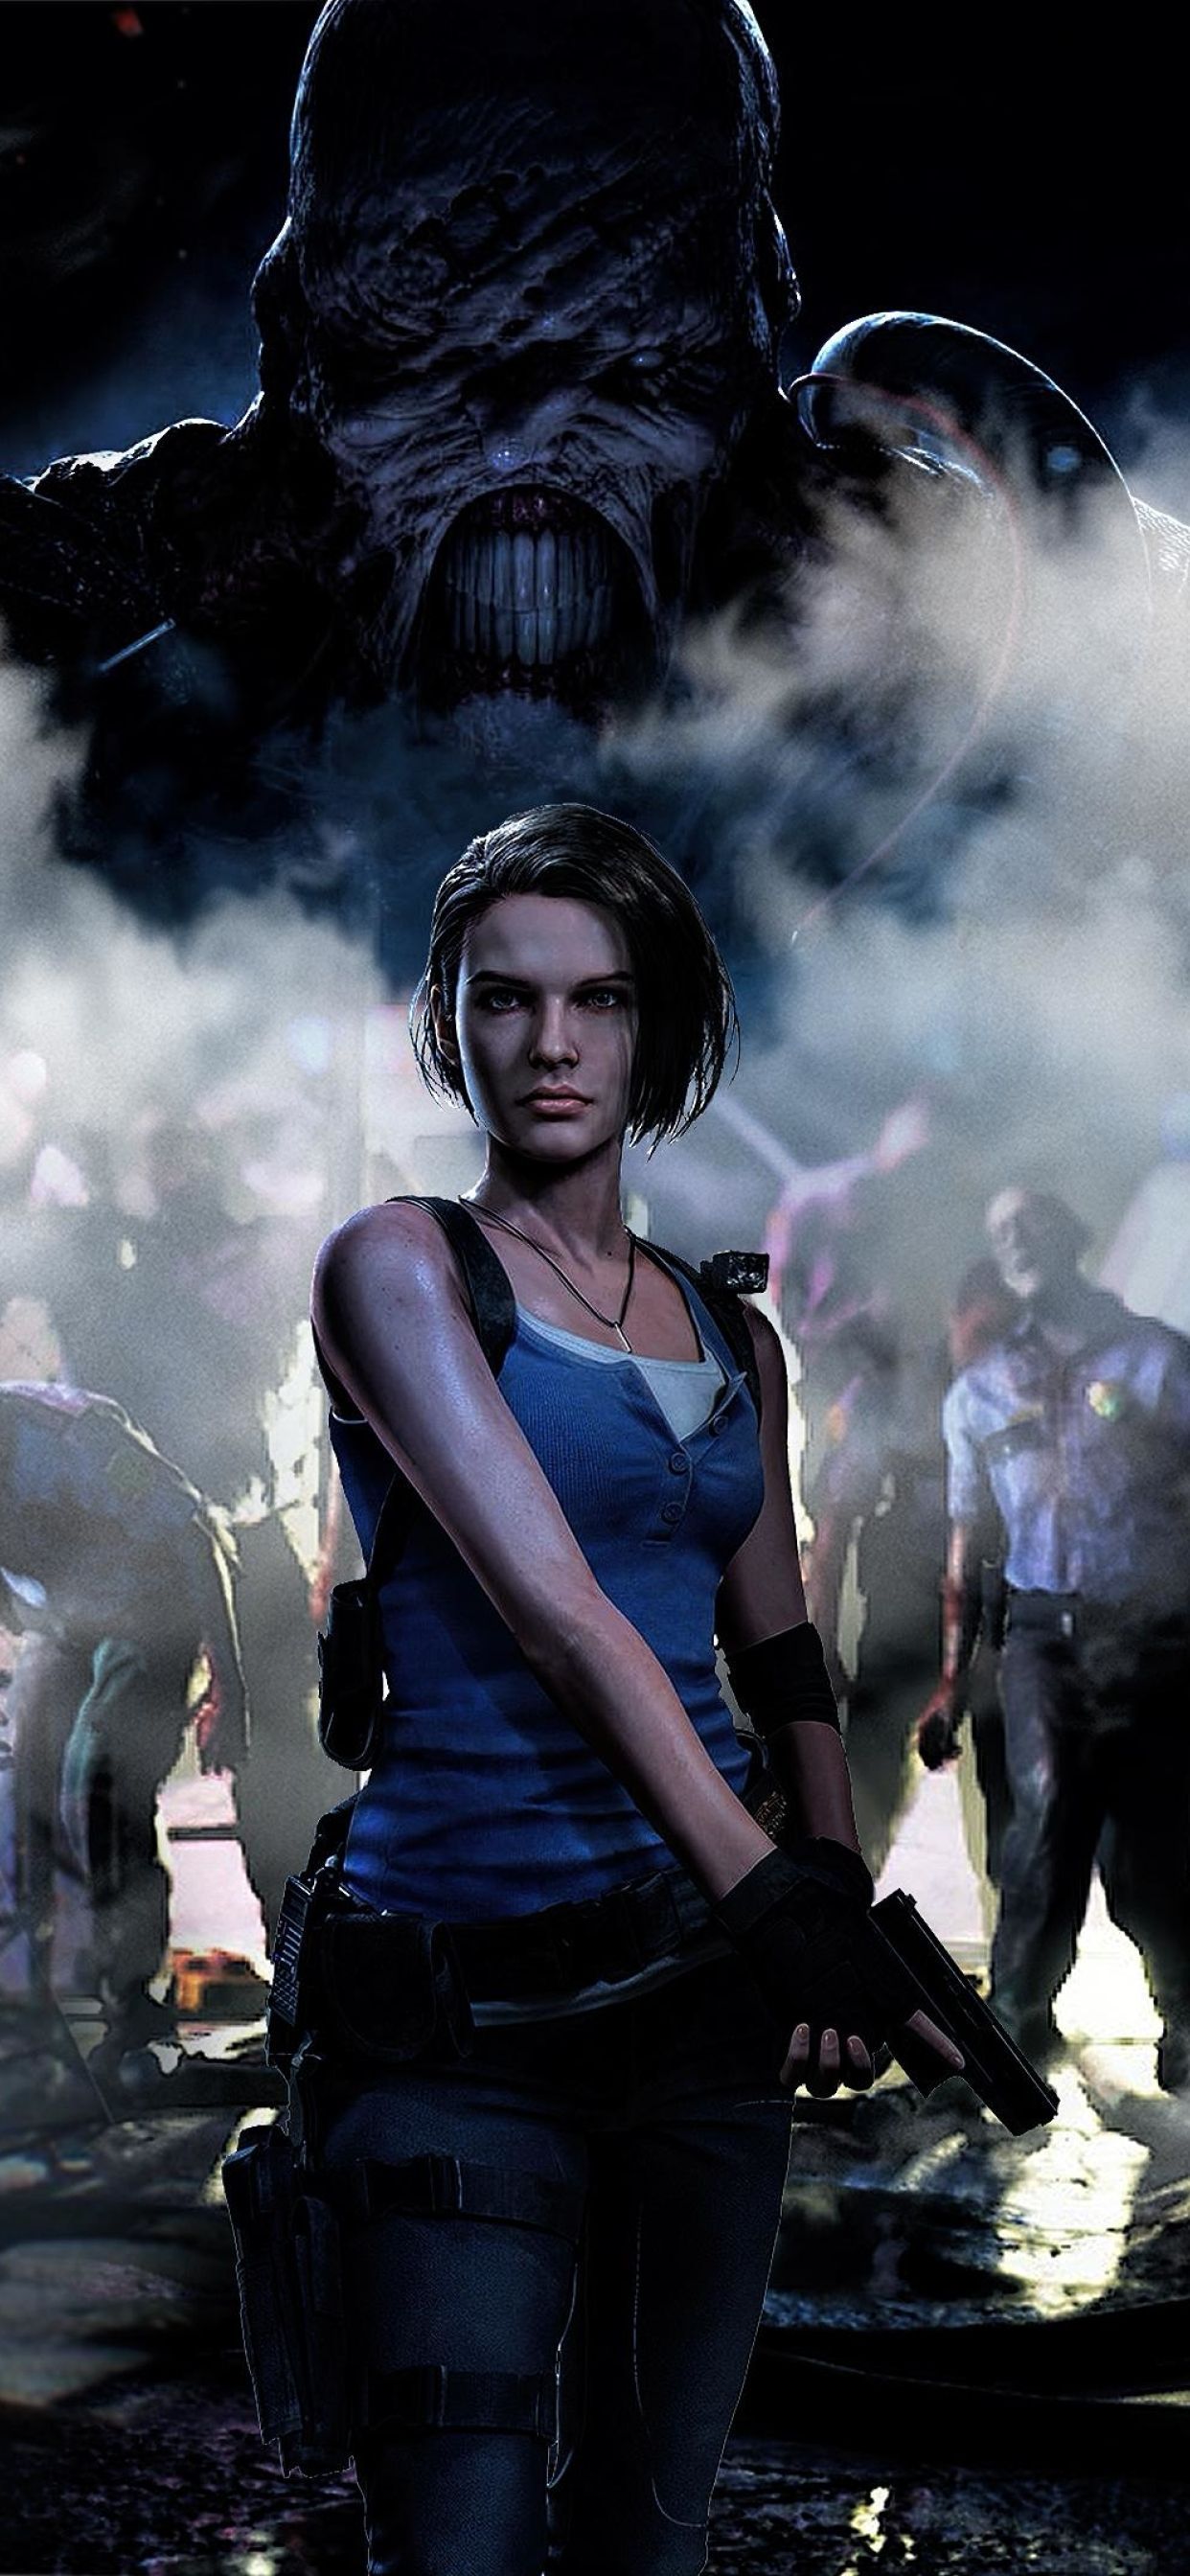 Resident Evil 3 Remake iPhone 11 wallpaper. Resident evil girl, Resident evil 3 remake, Valentine resident evil